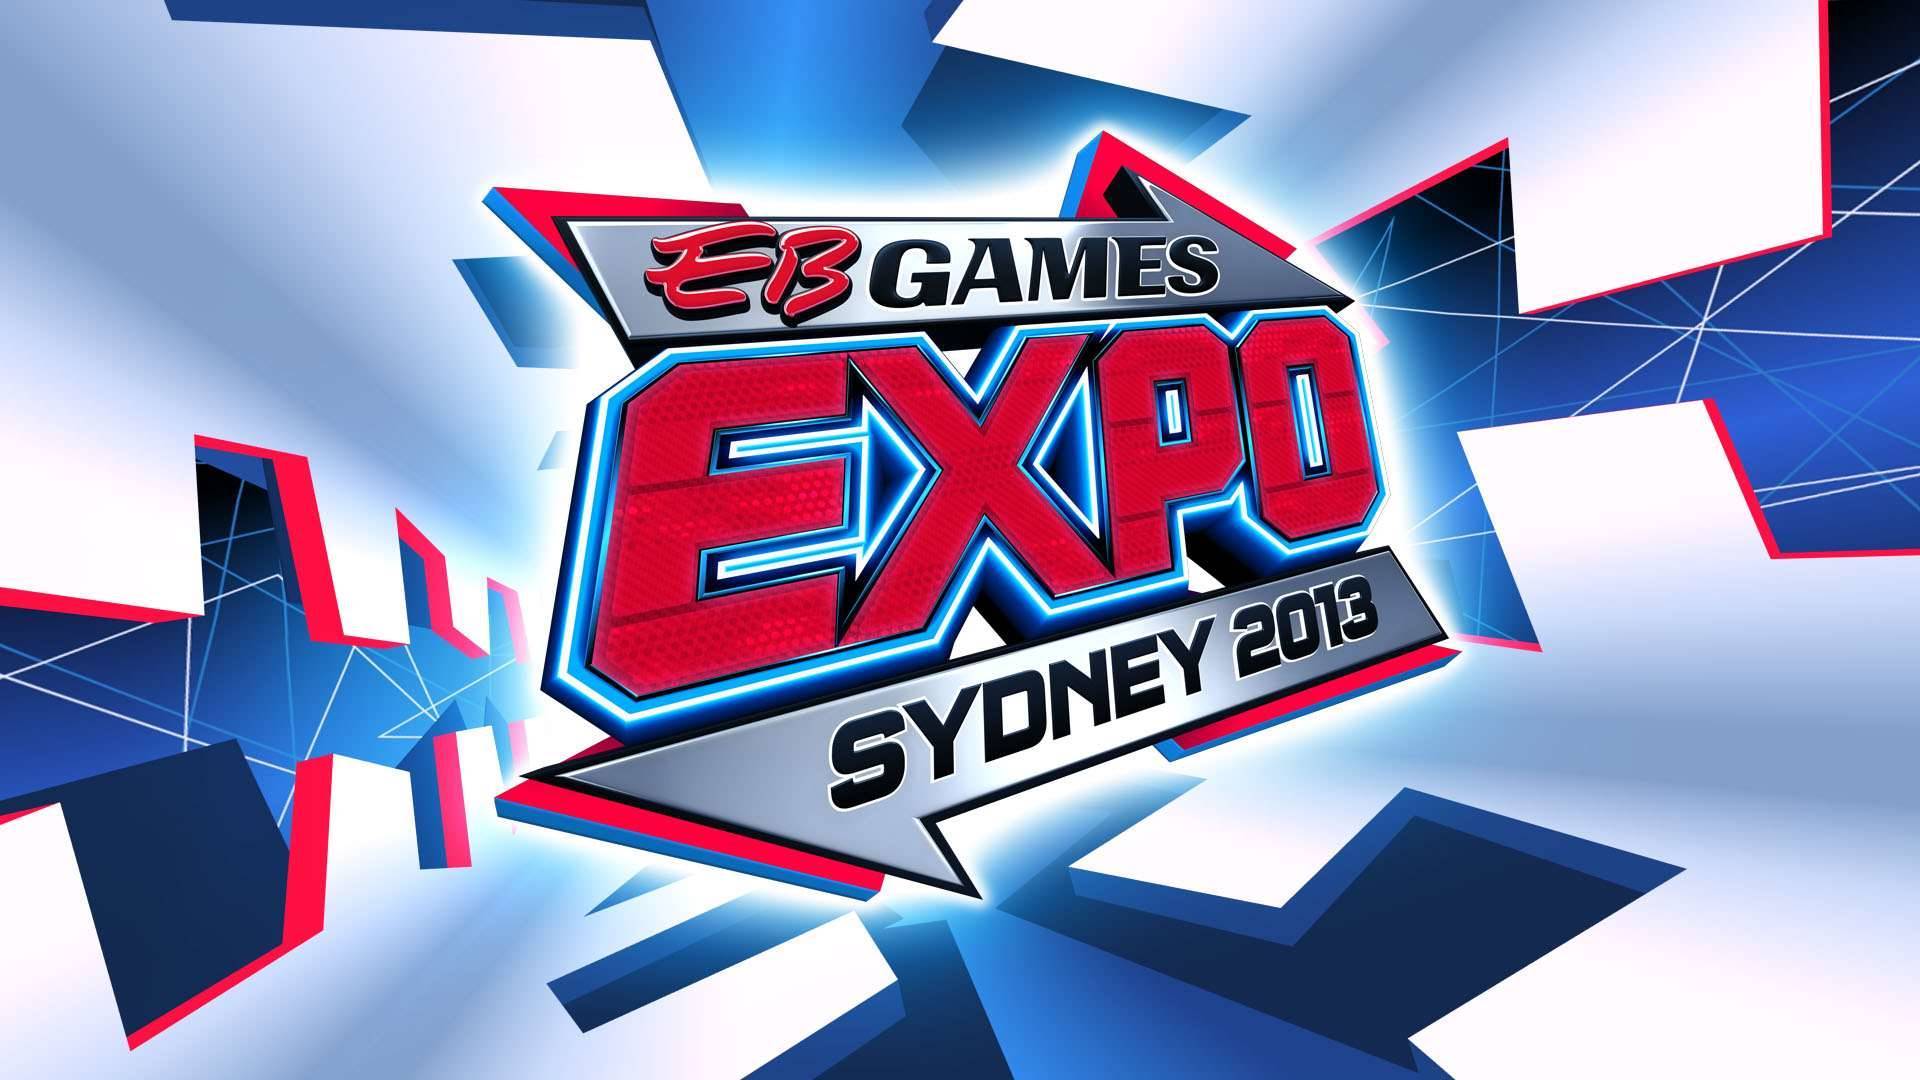 Game Expo Sydney